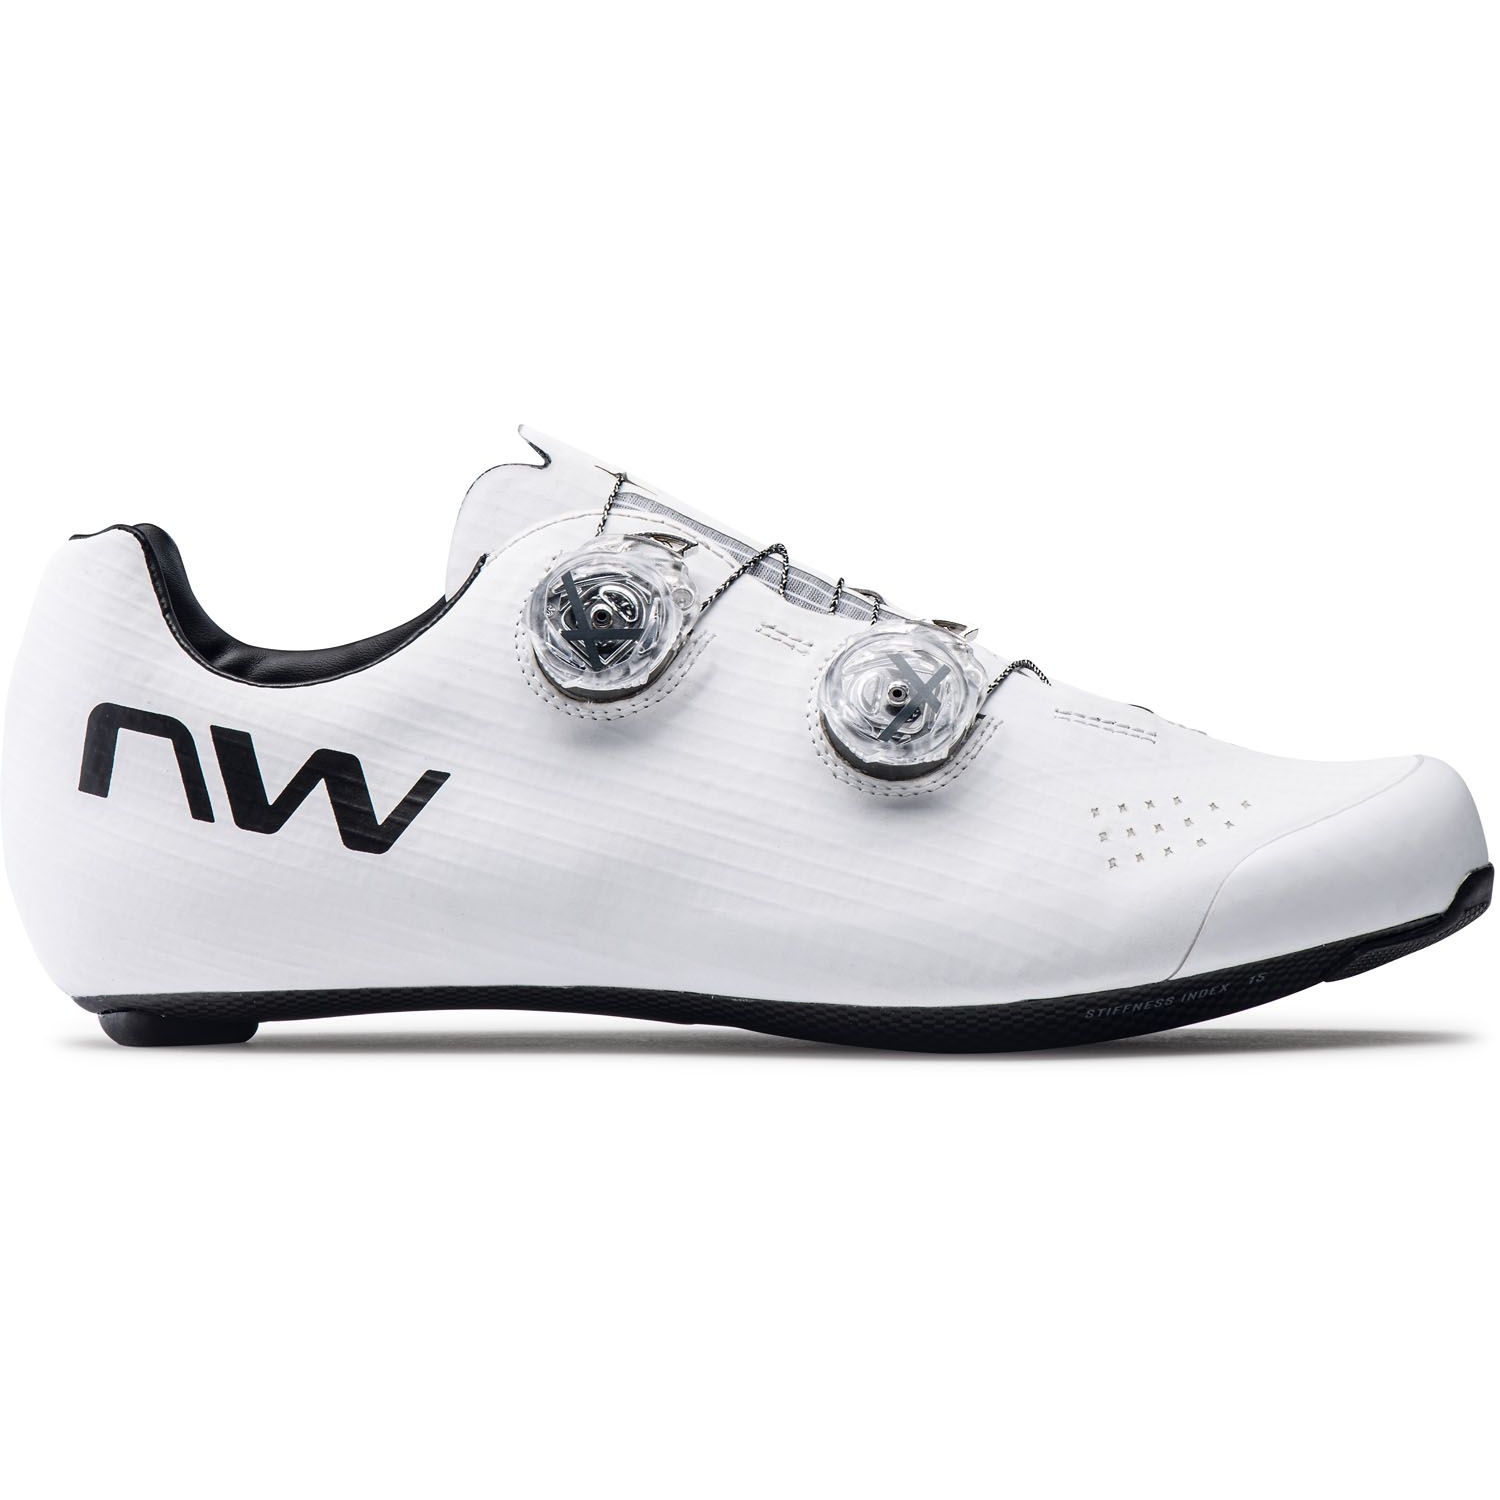 Produktbild von Northwave Extreme Pro 3 Rennradschuhe - weiß/schwarz 51